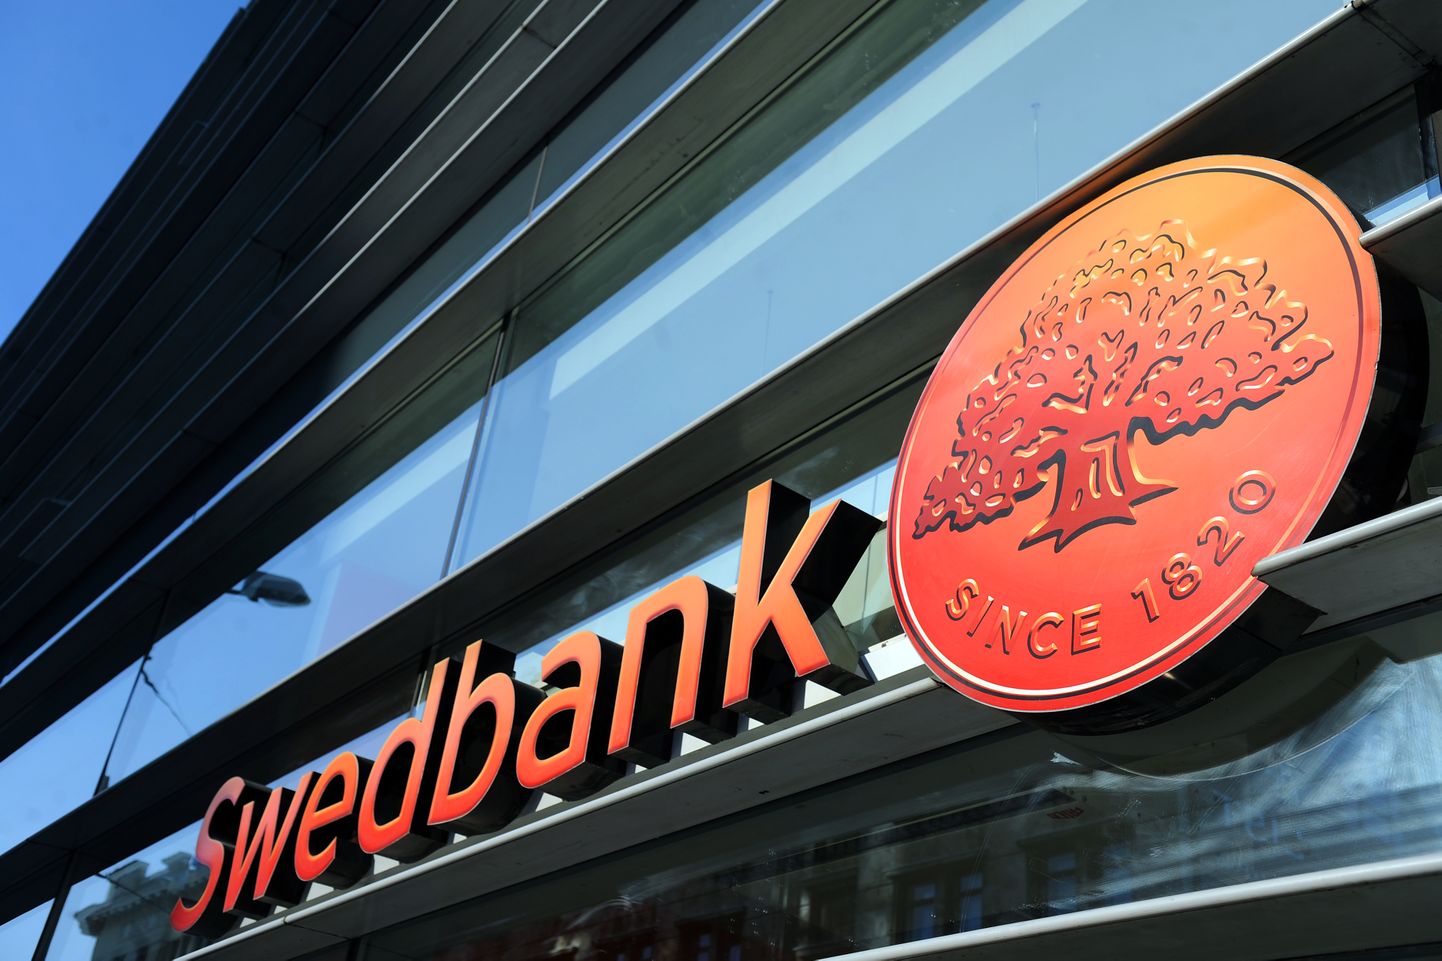 Swedbank lv. Swedbank. Swedbank ab. Swedbank logo. Шведбанк Литва.